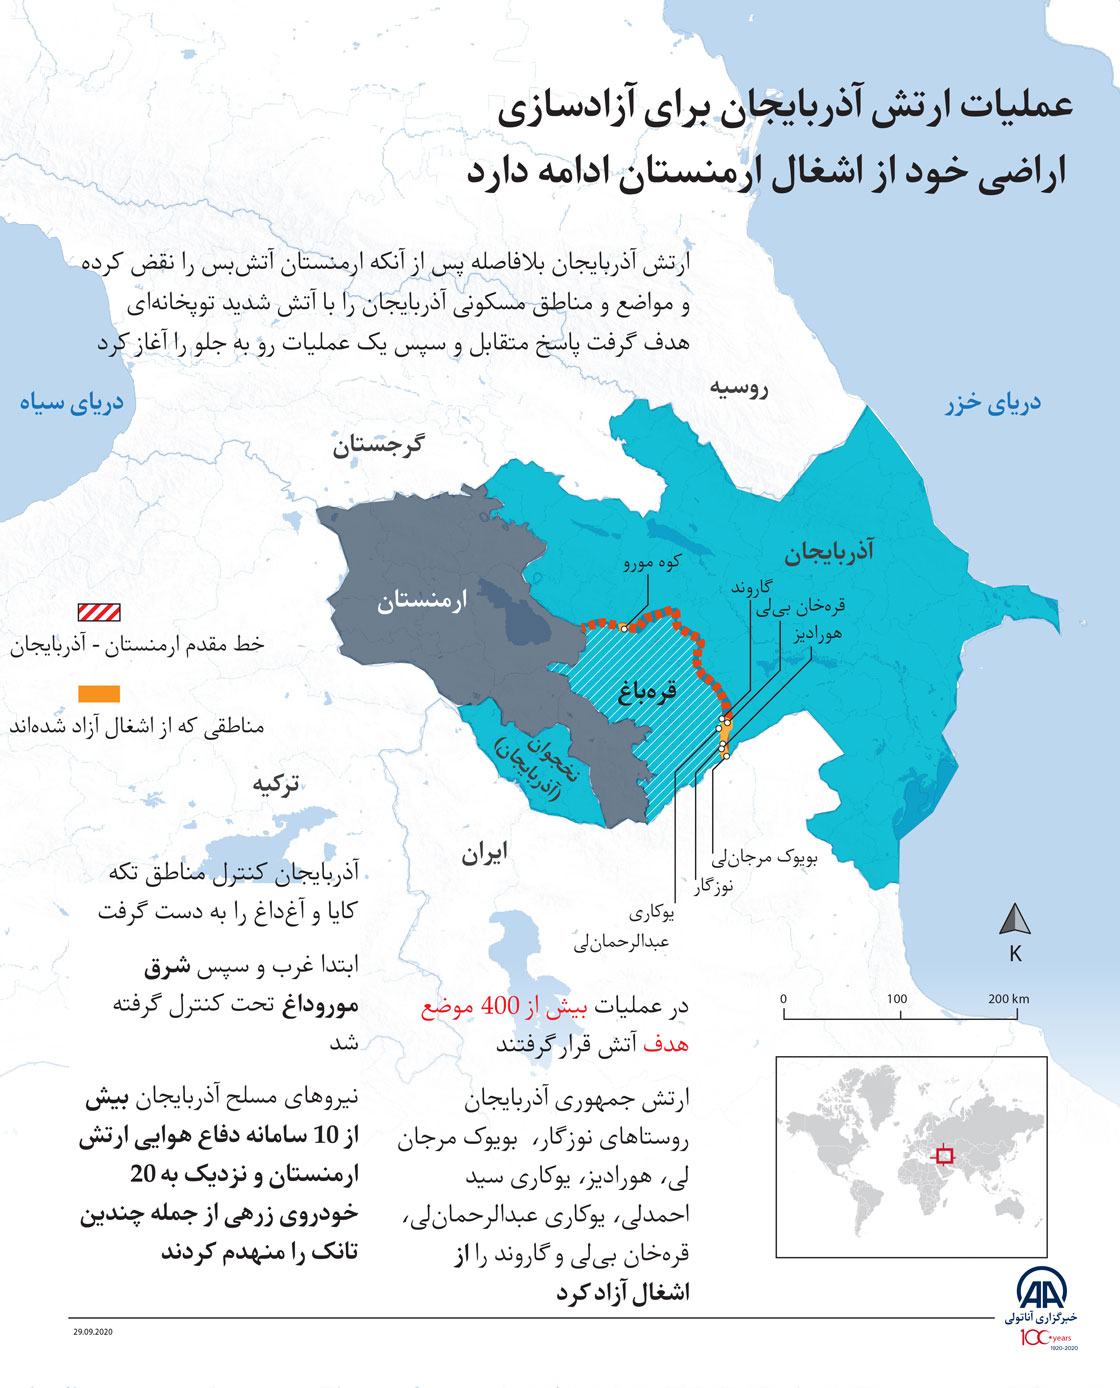 عملیات ارتش آذربایجان برای آزادسازی اراضی خود از اشغال ارمنستان ادامه دارد